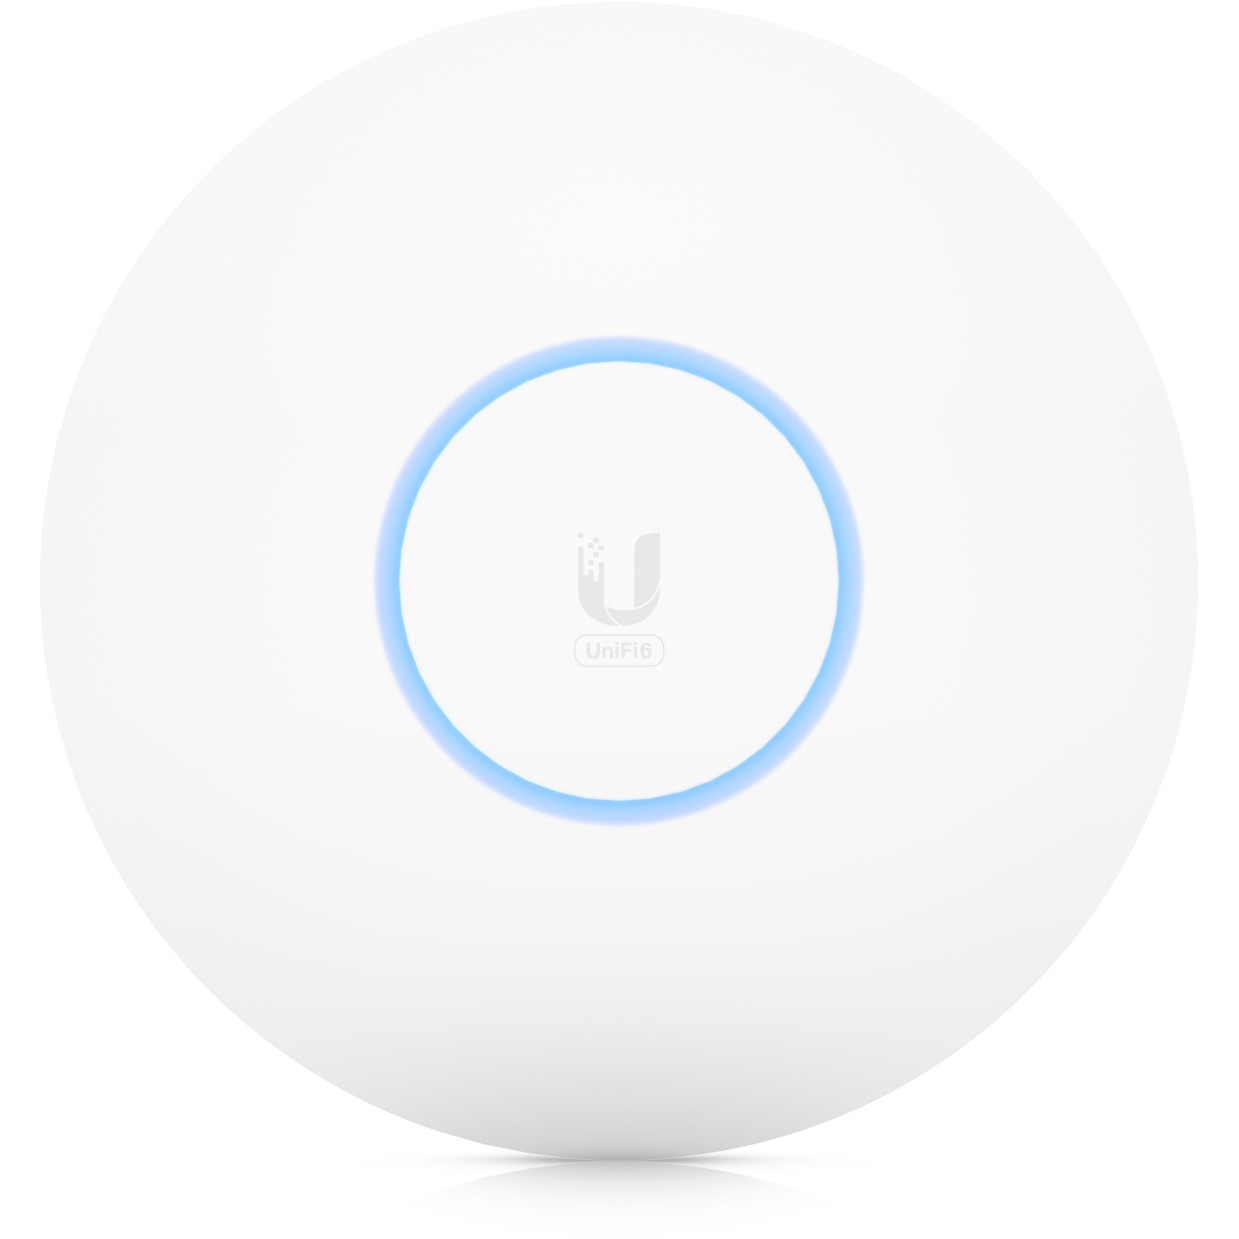 Ubiquiti U6-PRO wireless access point